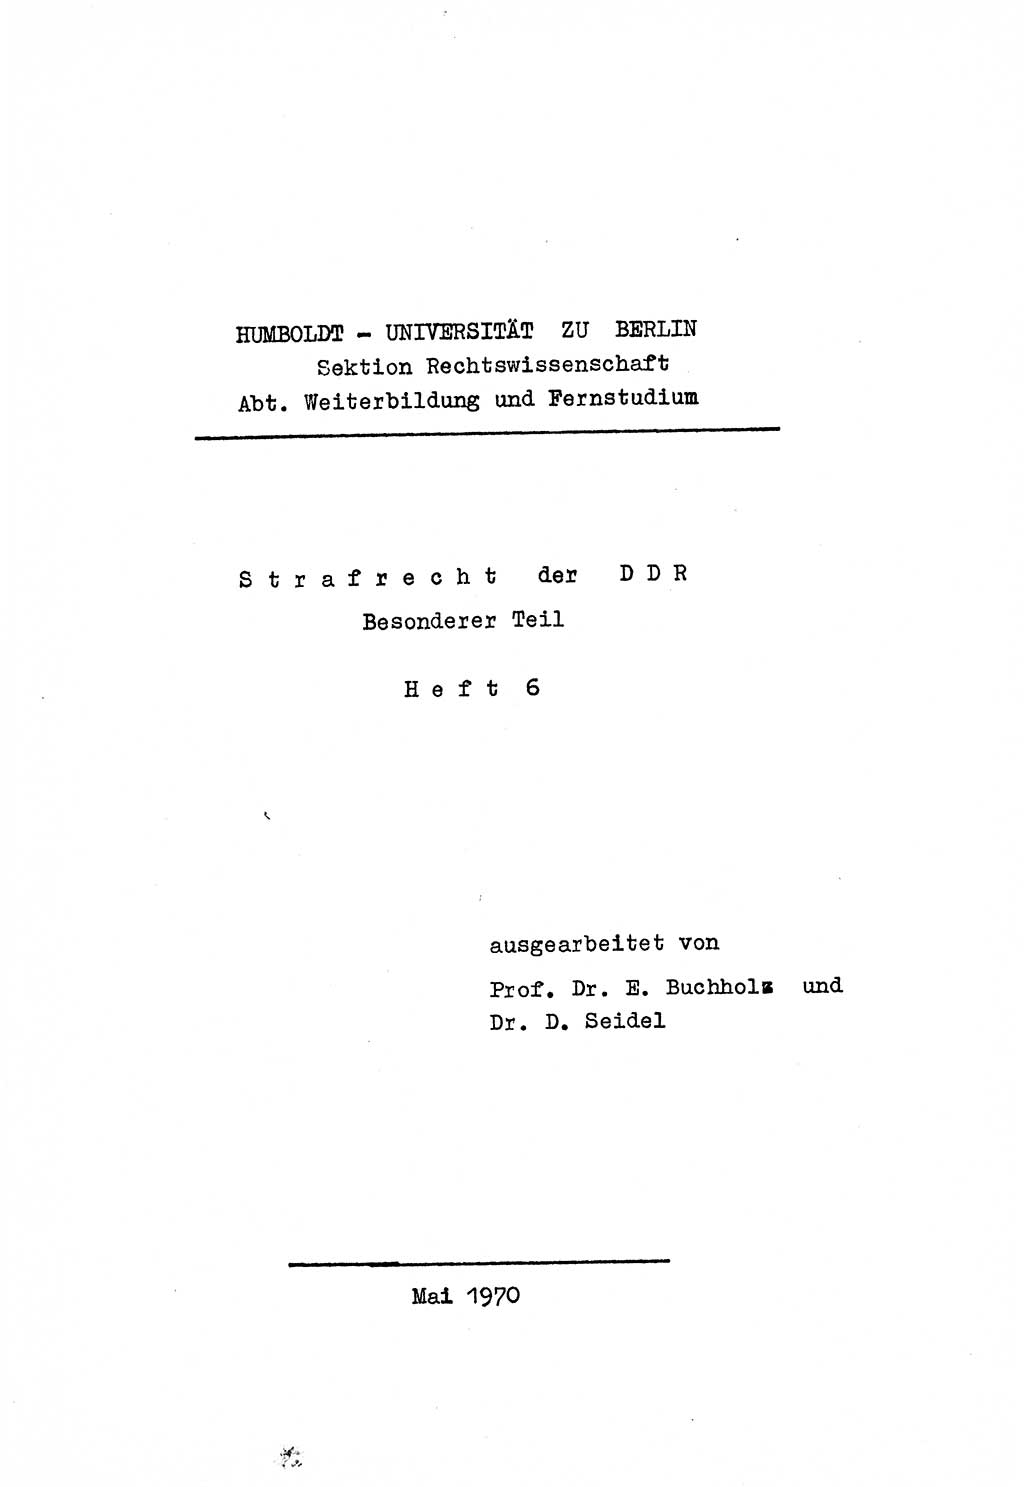 Strafrecht der DDR (Deutsche Demokratische Republik), Besonderer Teil, Lehrmaterial, Heft 6 1970, Seite 1 (Strafr. DDR BT Lehrmat. H. 6 1970, S. 1)